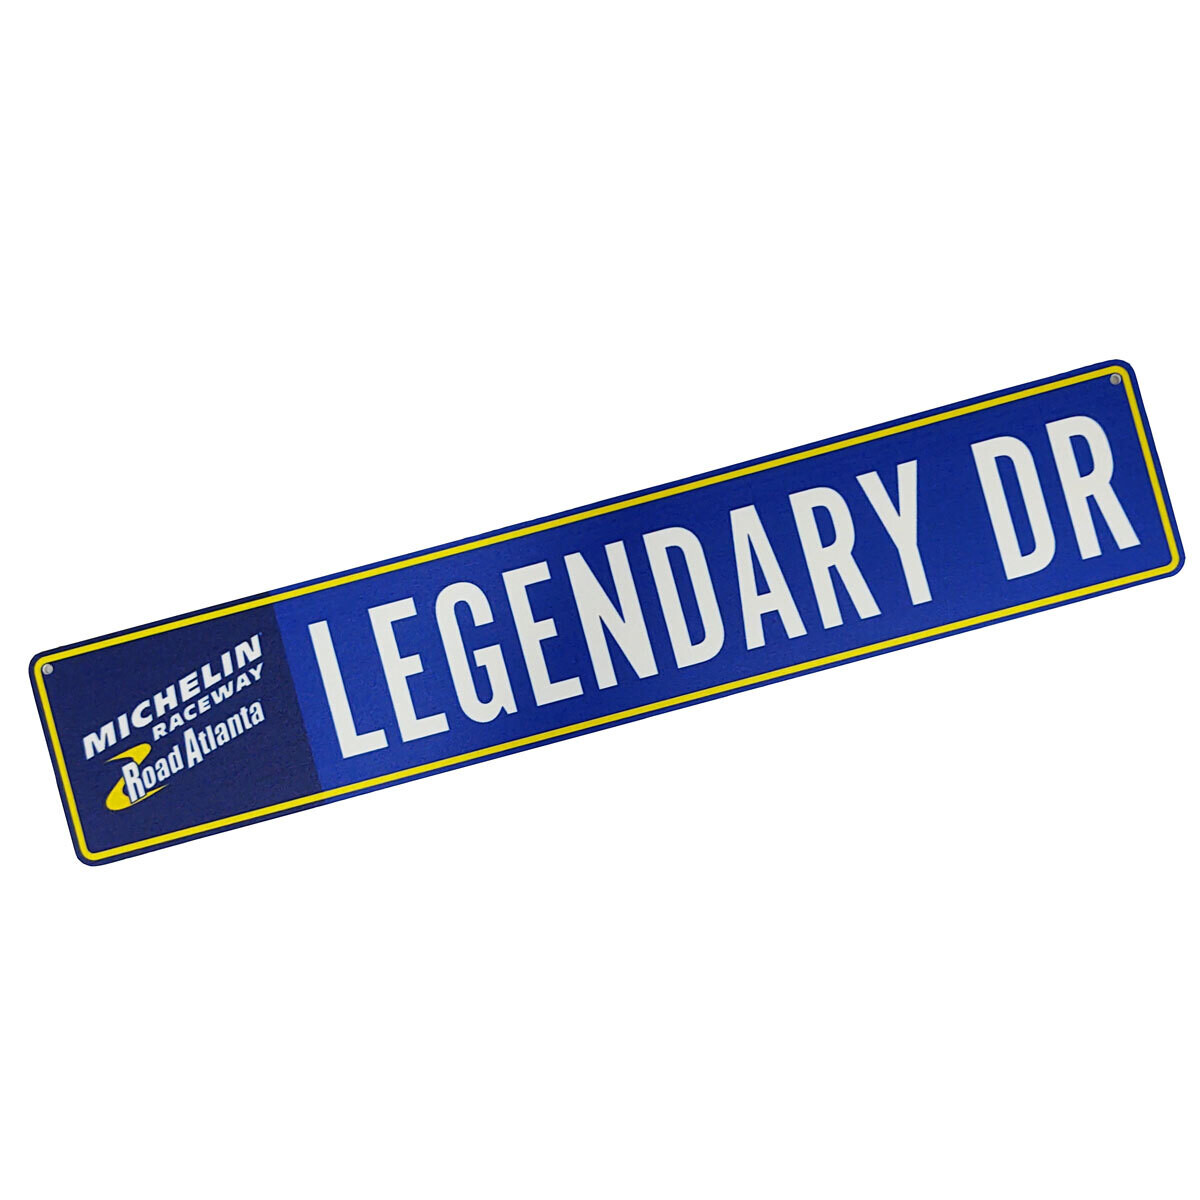 Street Sign- Legendary DR